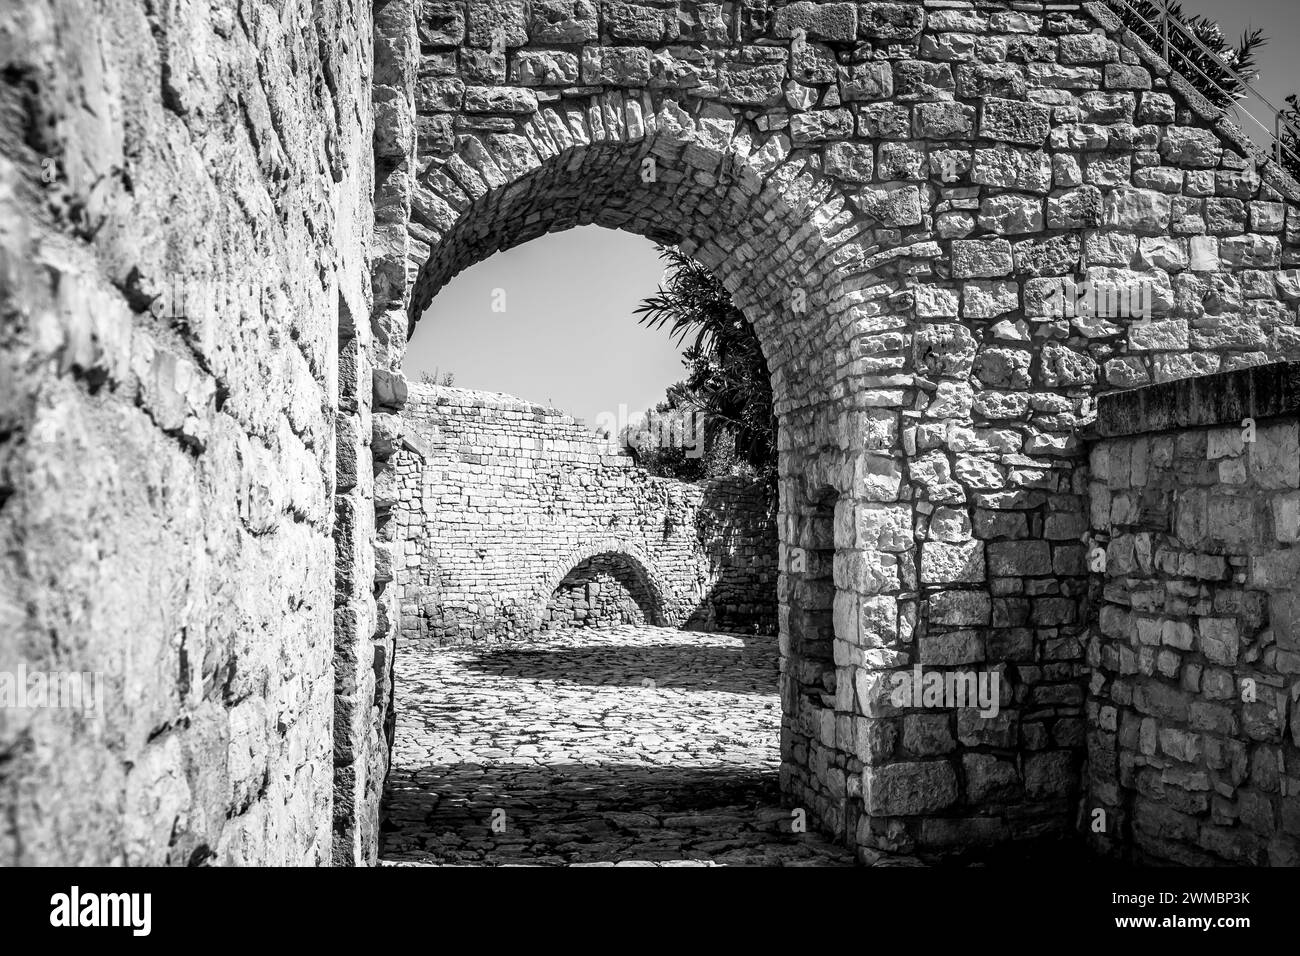 Ferme médiévale de Balsignano dans la zone archéologique de Balsignano (10ème siècle), ville de Modugno, province de Bari, région des Pouilles dans le sud de l'Italie Banque D'Images